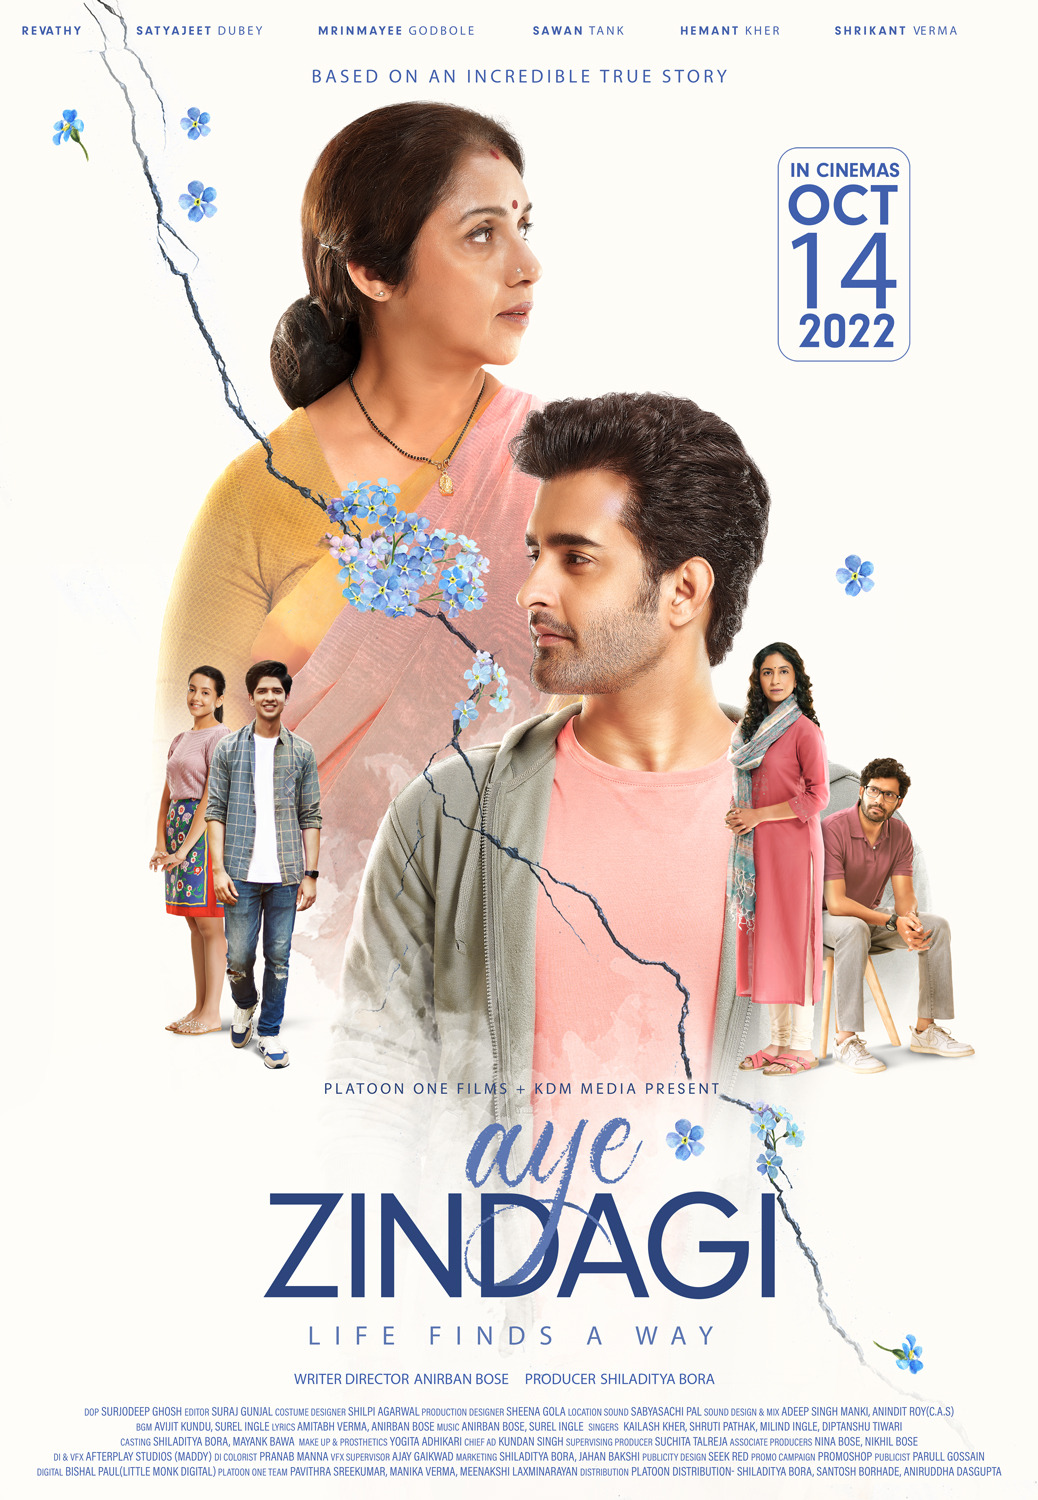 Extra Large Movie Poster Image for Aye Zindagi 